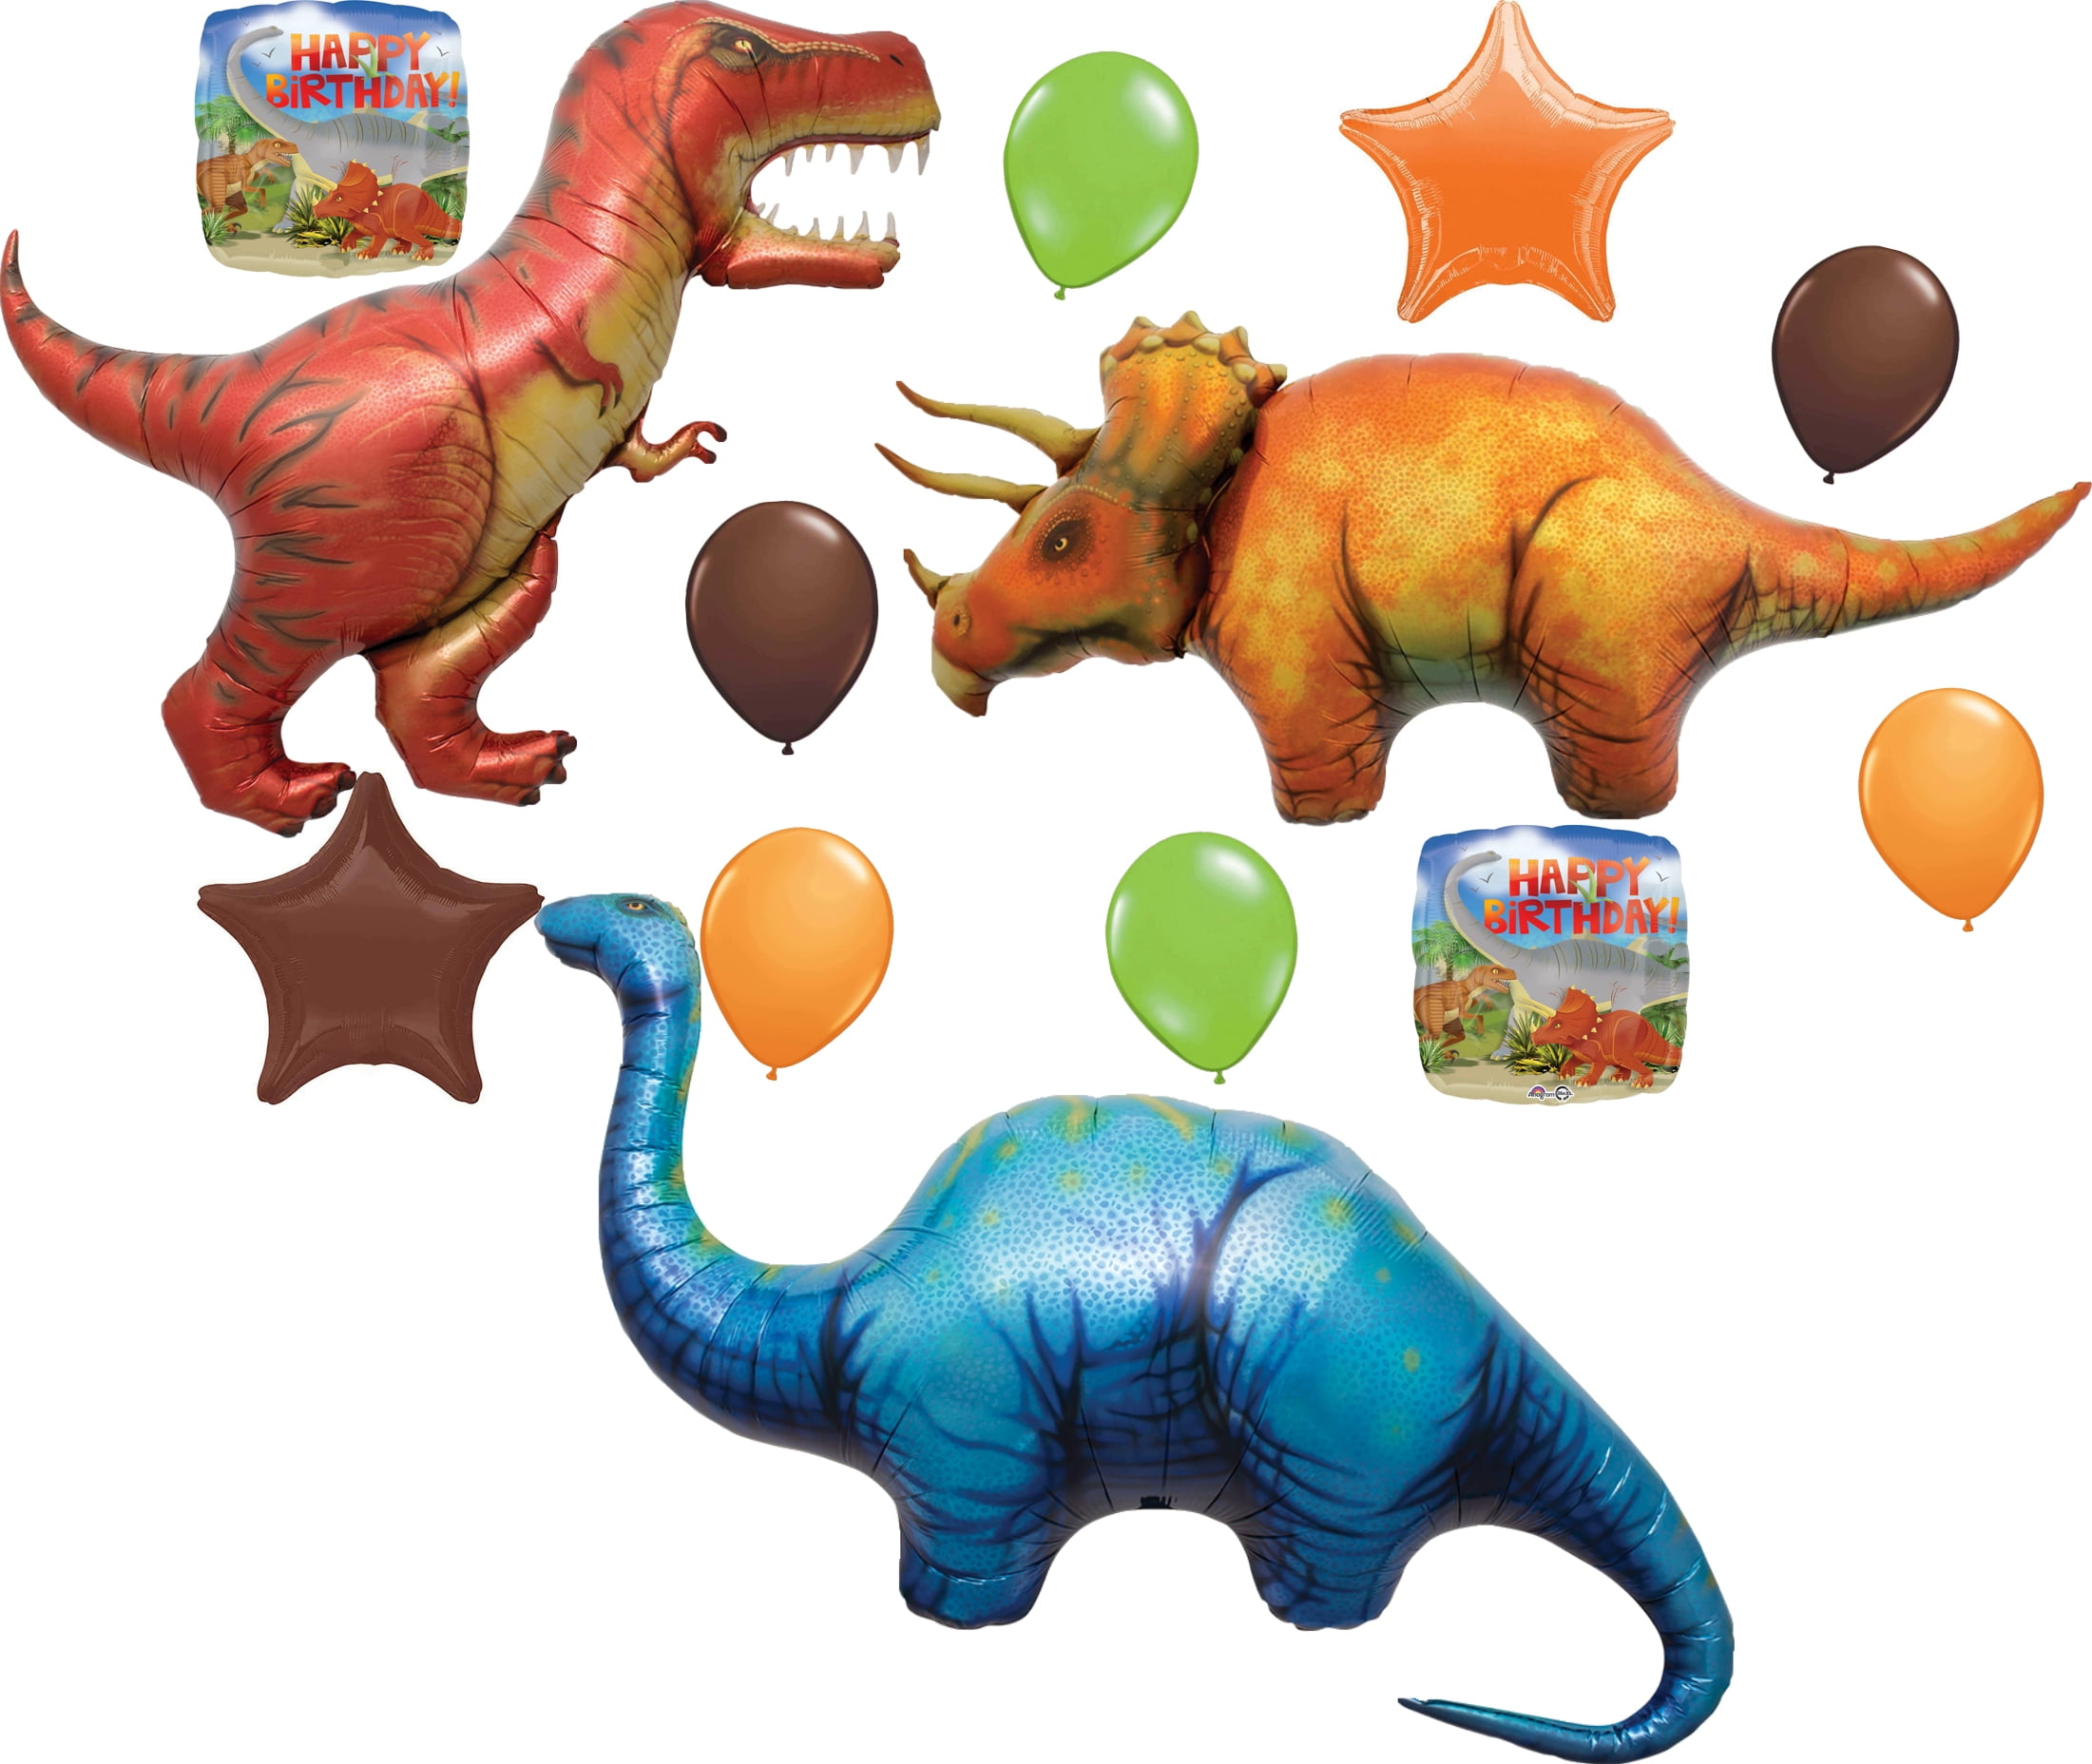 Dinosaur balloons